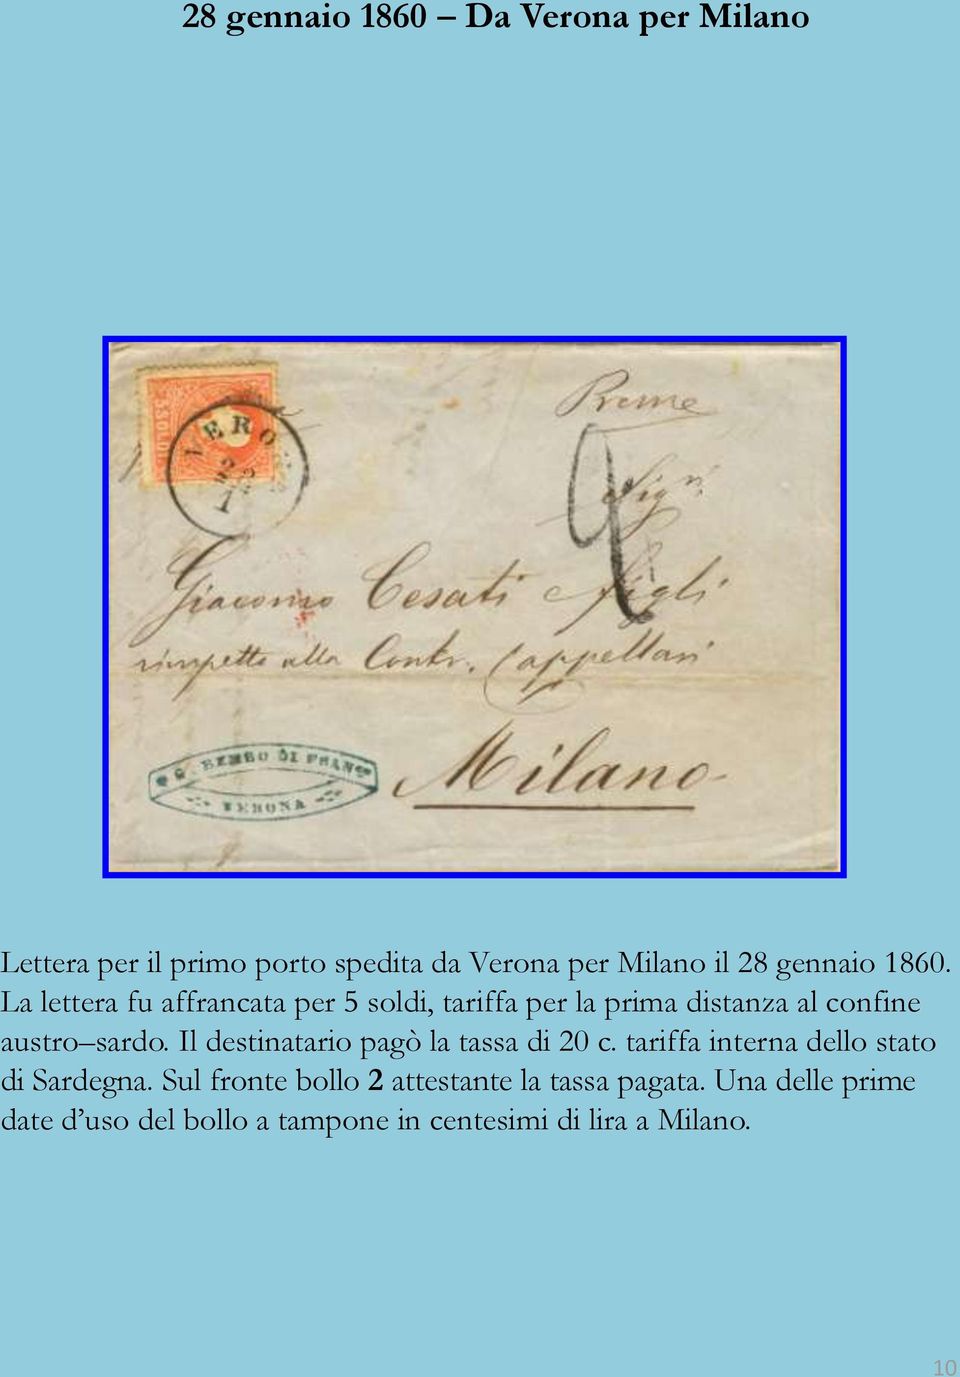 La lettera fu affrancata per 5 soldi, tariffa per la prima distanza al confine austro sardo.